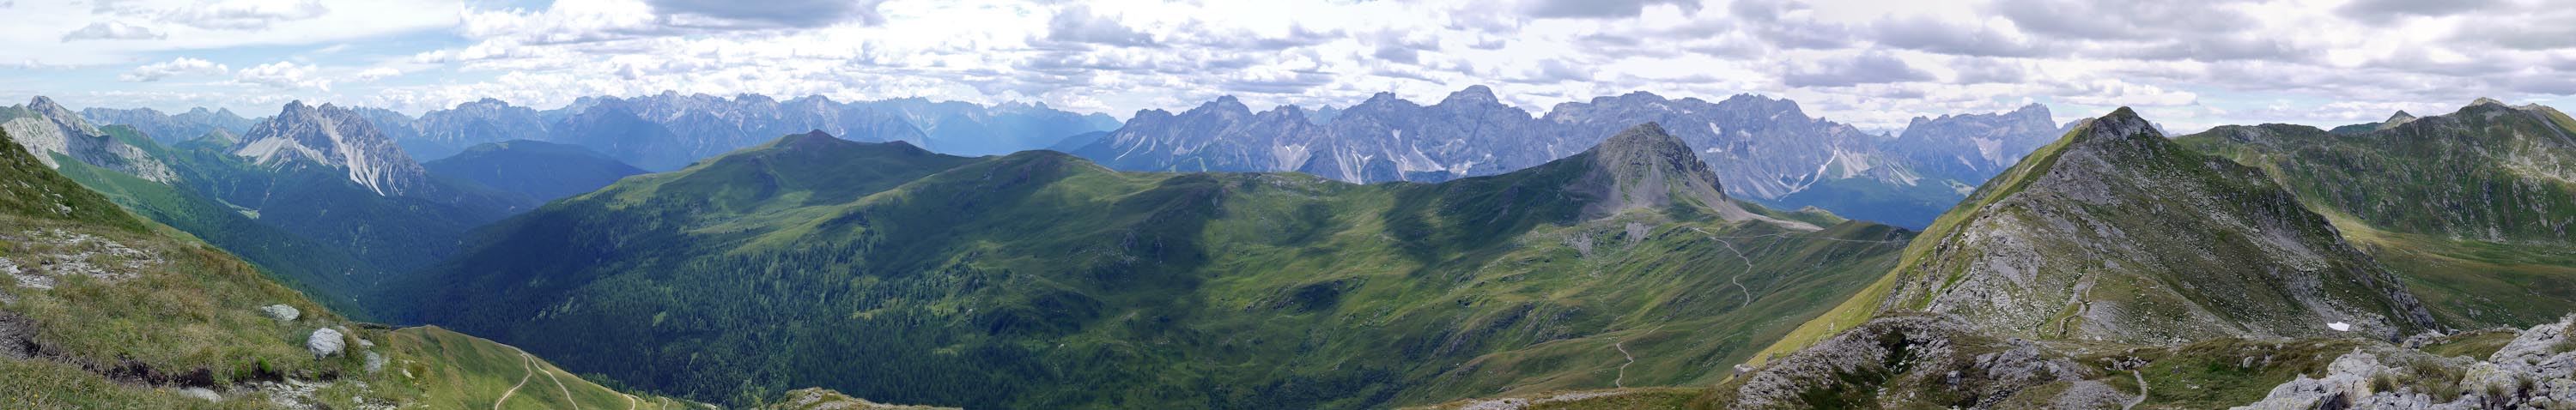 Alpenpanorama - Obstanser Sattel